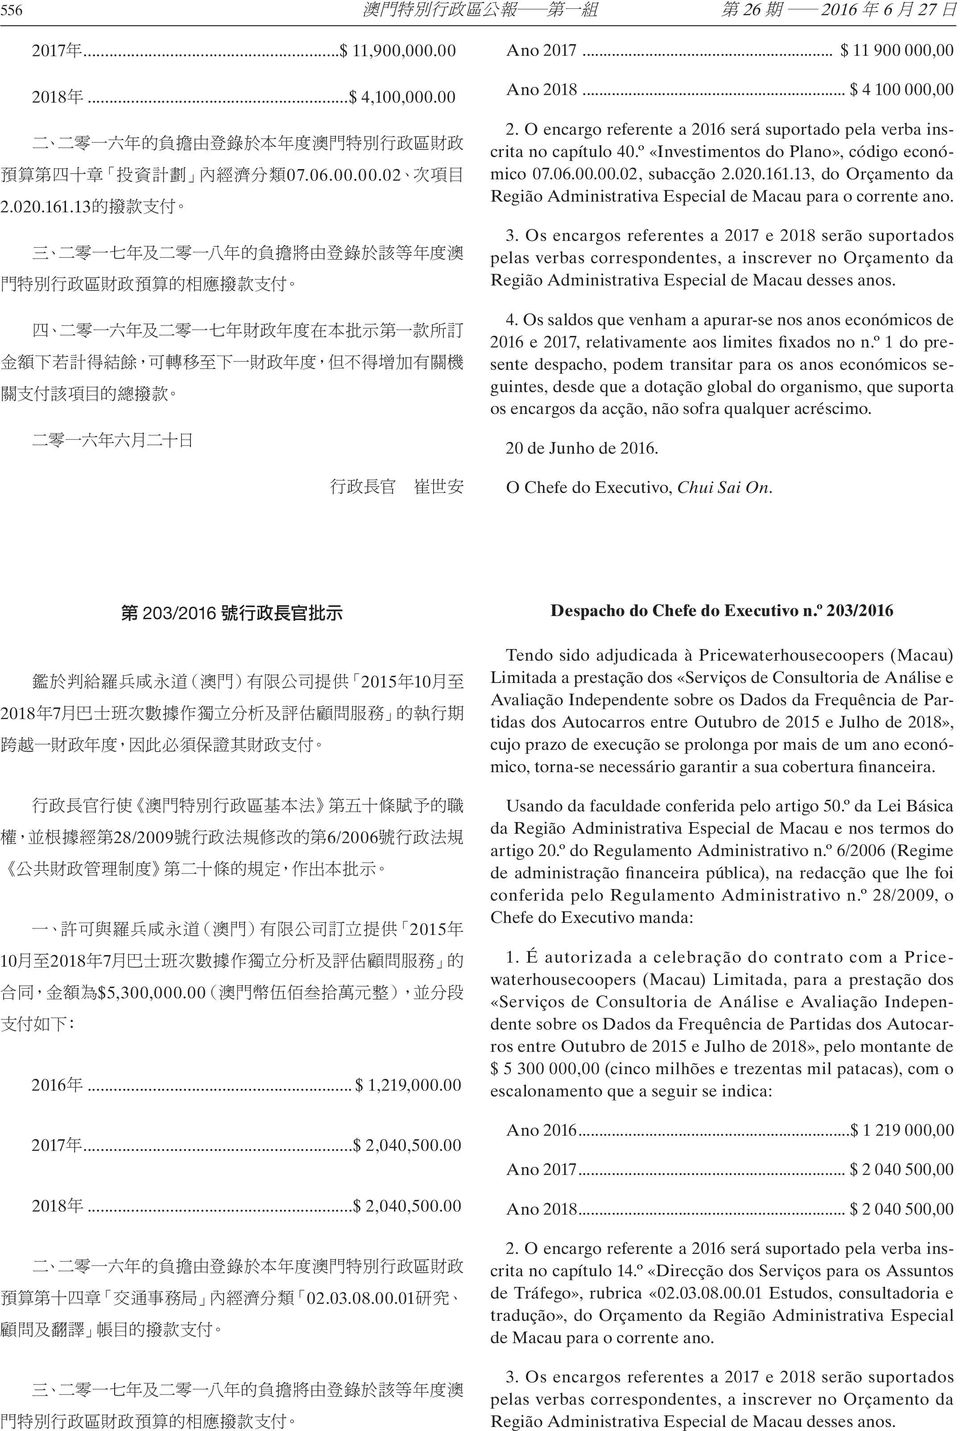 Os encargos referentes a 2017 e 2018 serão suportados pelas verbas correspondentes, a inscrever no Orçamento da Região Administrativa Especial de Macau desses anos. 4.